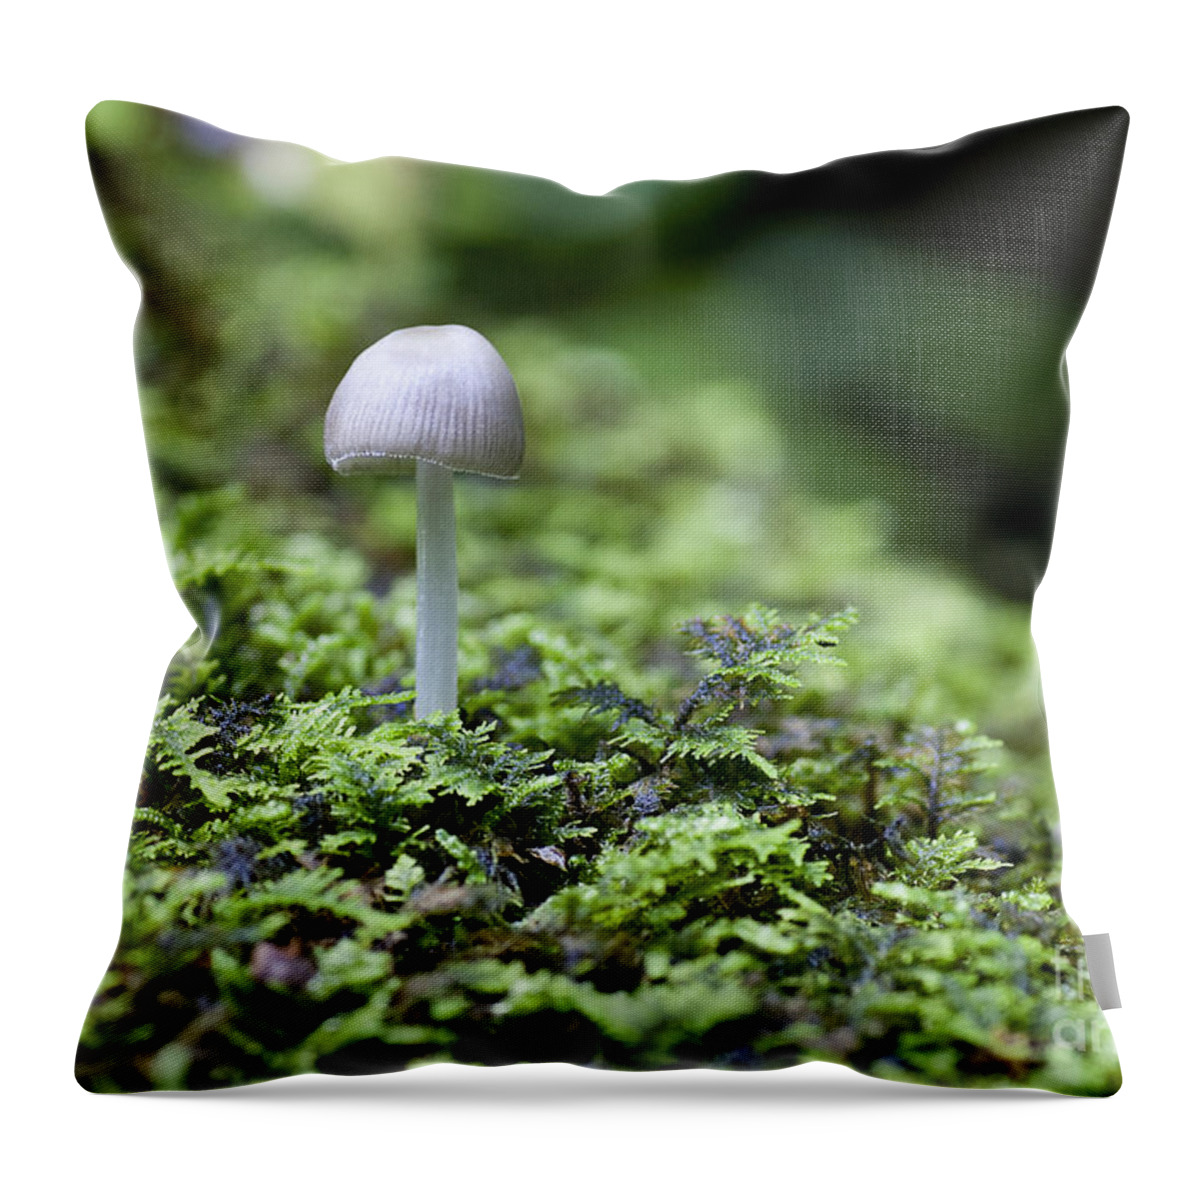 Ridgeway Throw Pillow featuring the photograph Mushroom by Steven Ralser